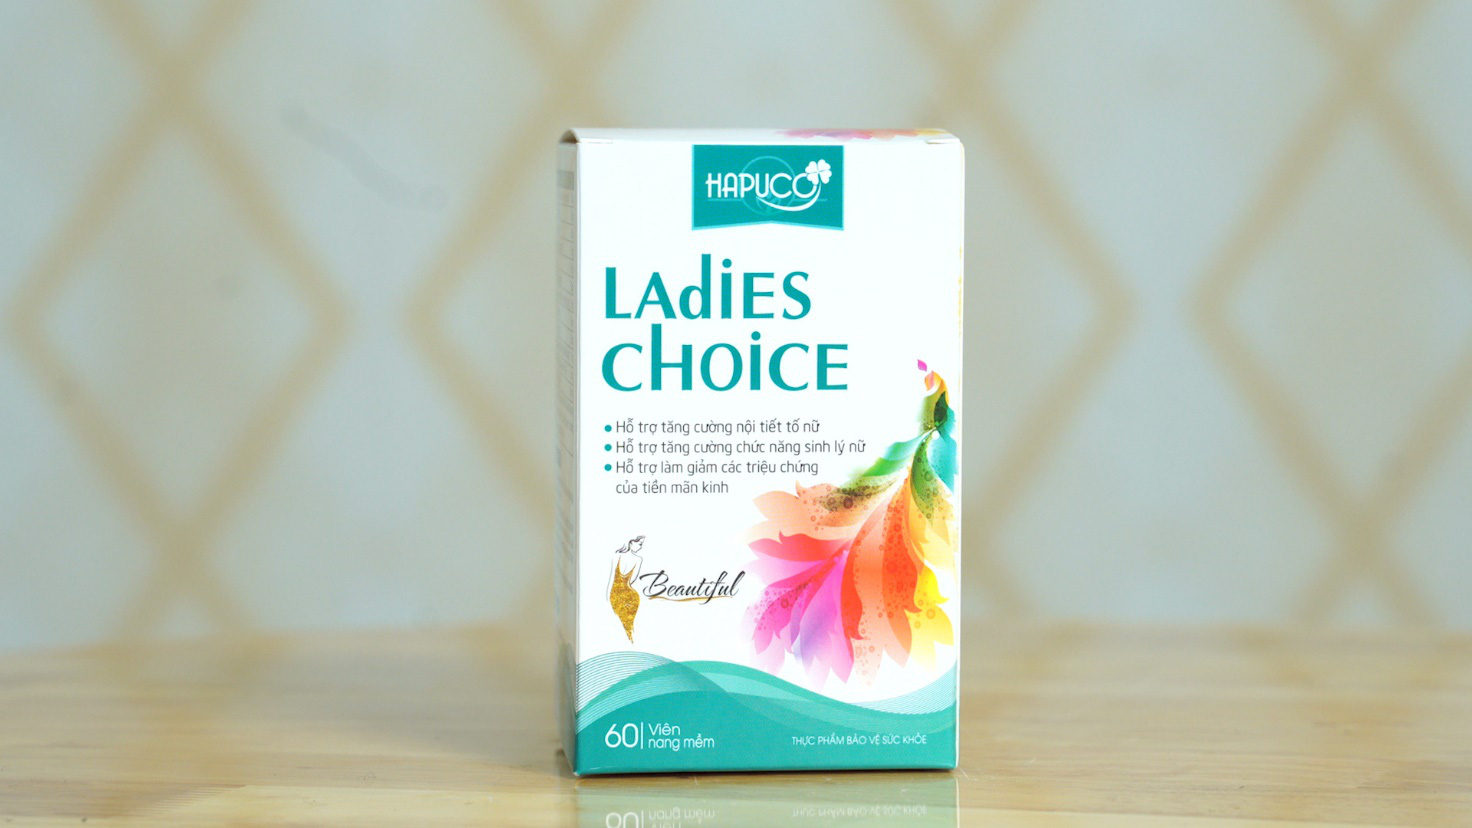 Thực phẩm bảo vệ sức khoẻ Ladies Choice – Bí kíp giữ gìn sắc xuân dành cho phái đẹp tuổi tiền mãn kinh - Ảnh 3.